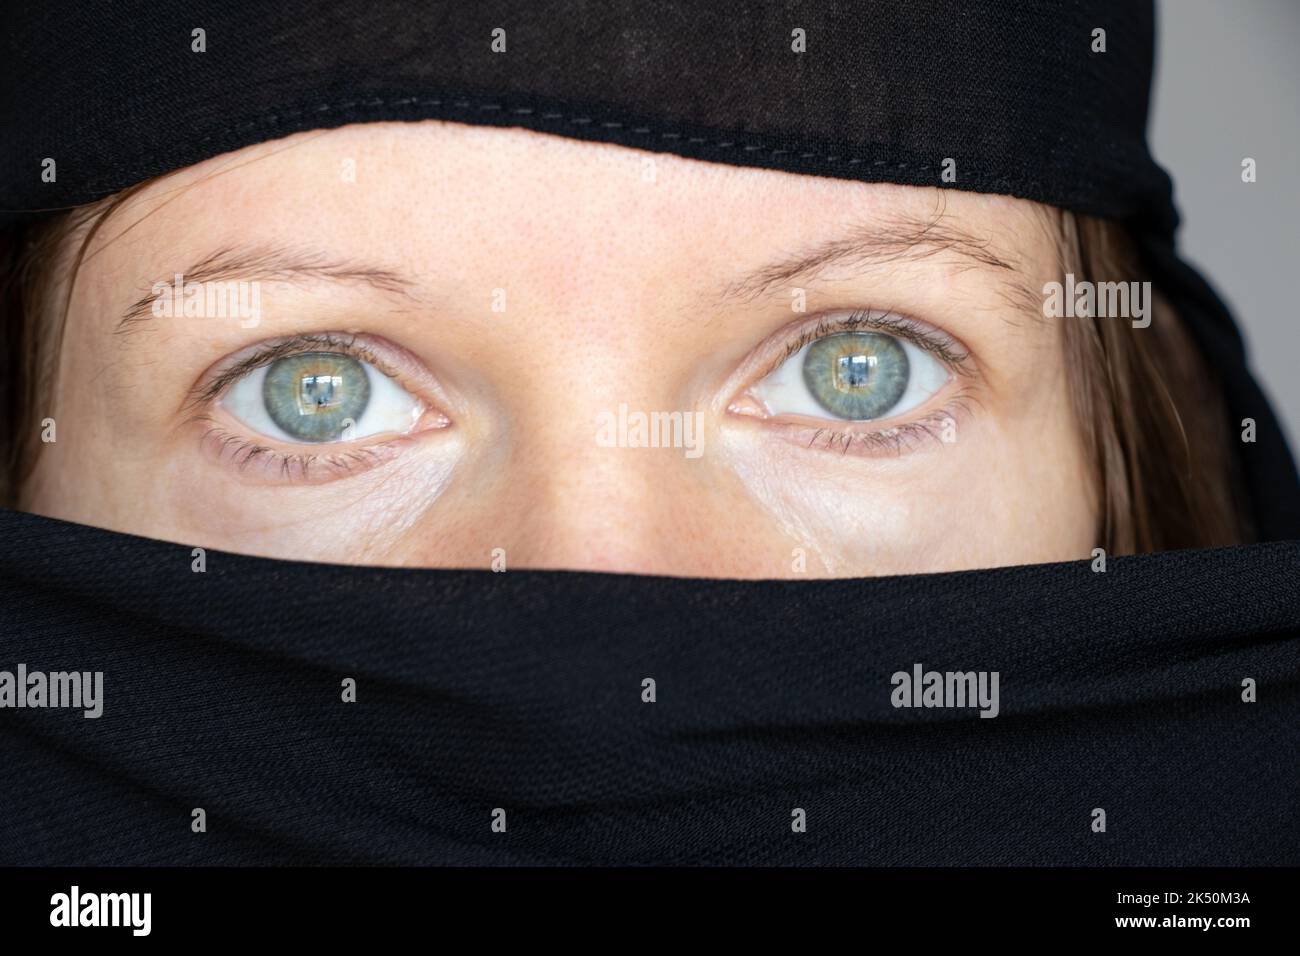 Das Mädchen bedeckte ihr Gesicht und ihren Kopf mit einem schwarzen Schal auf einem isolierten Hintergrund, der Glaube und die Religion sind muslimisch Stockfoto